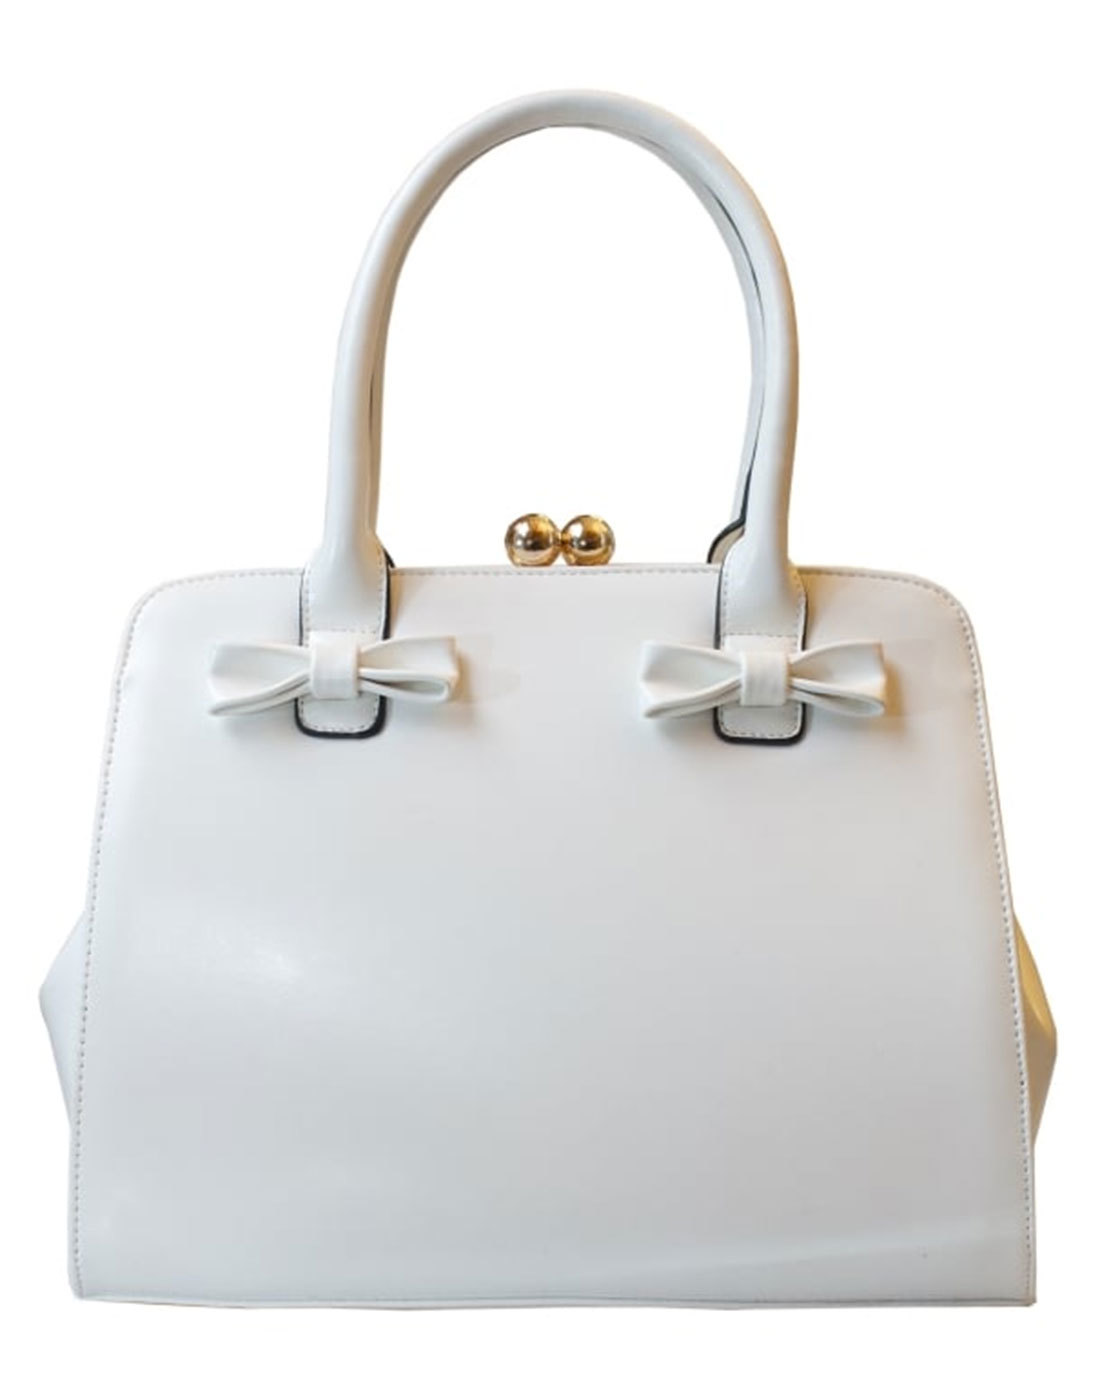 Jessica COLLECTIF Retro 1950s Bow Handbag in White